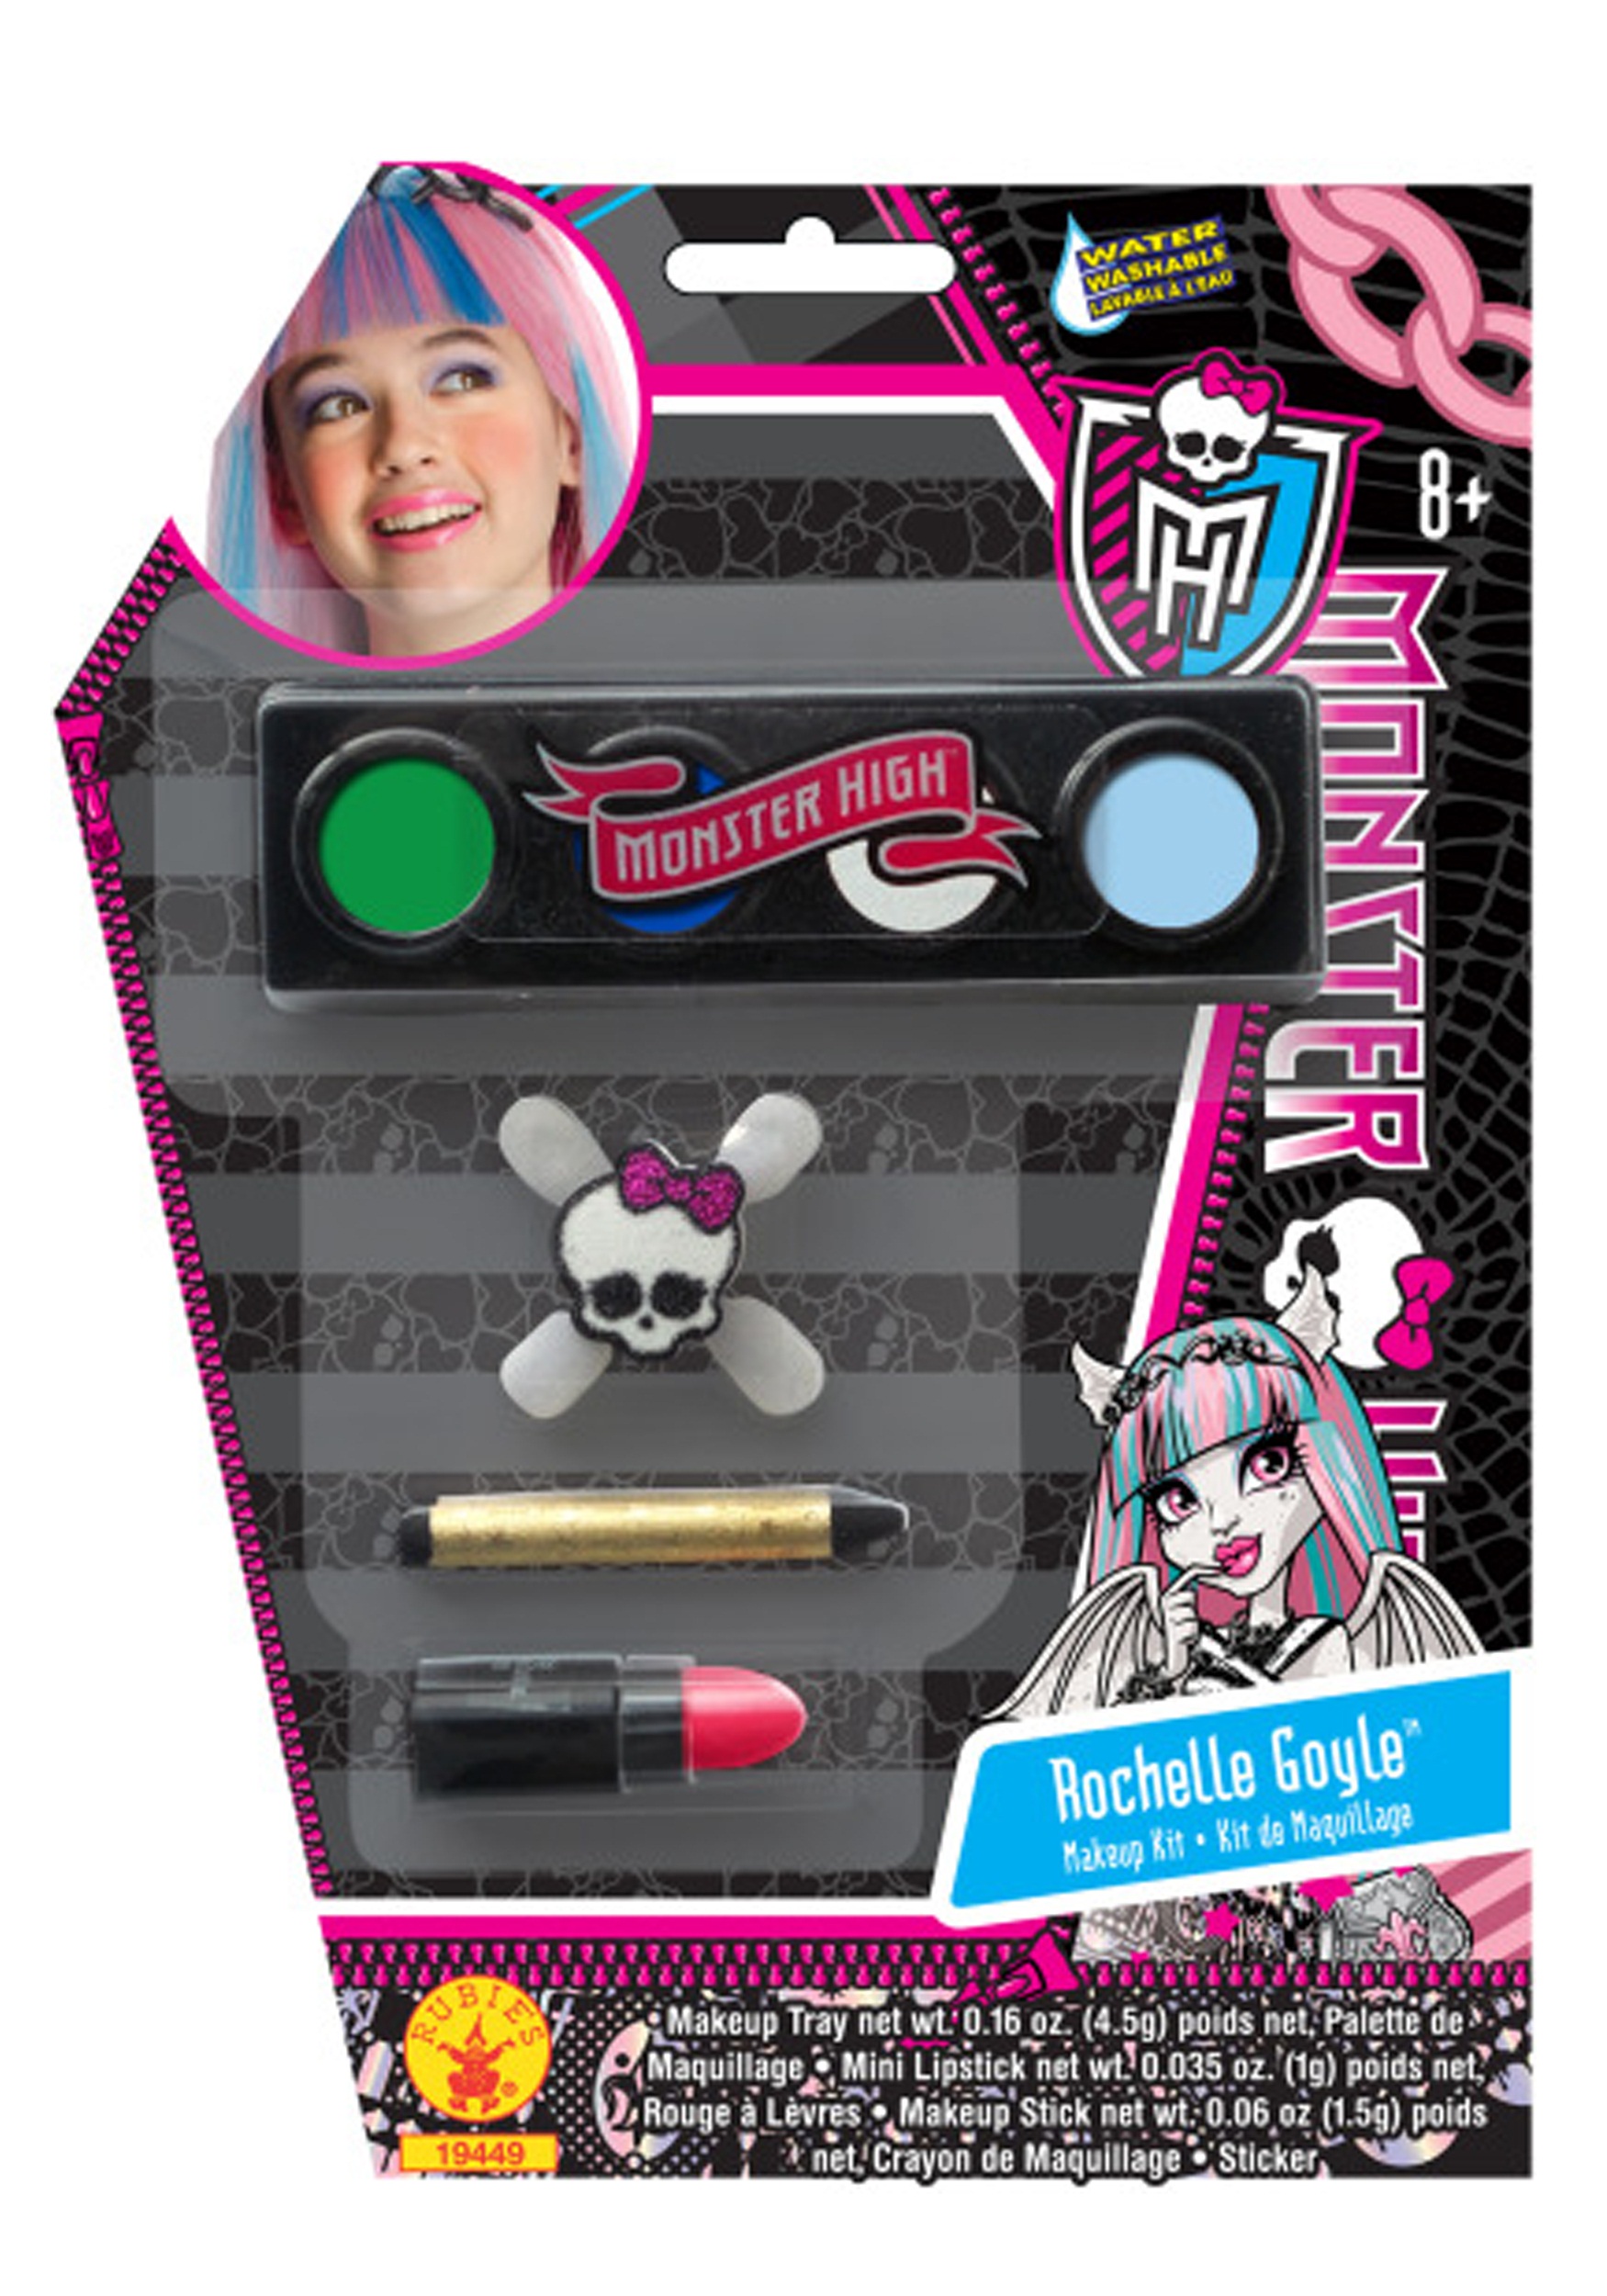 Monster High Rochelle Goyle Makeup Kit